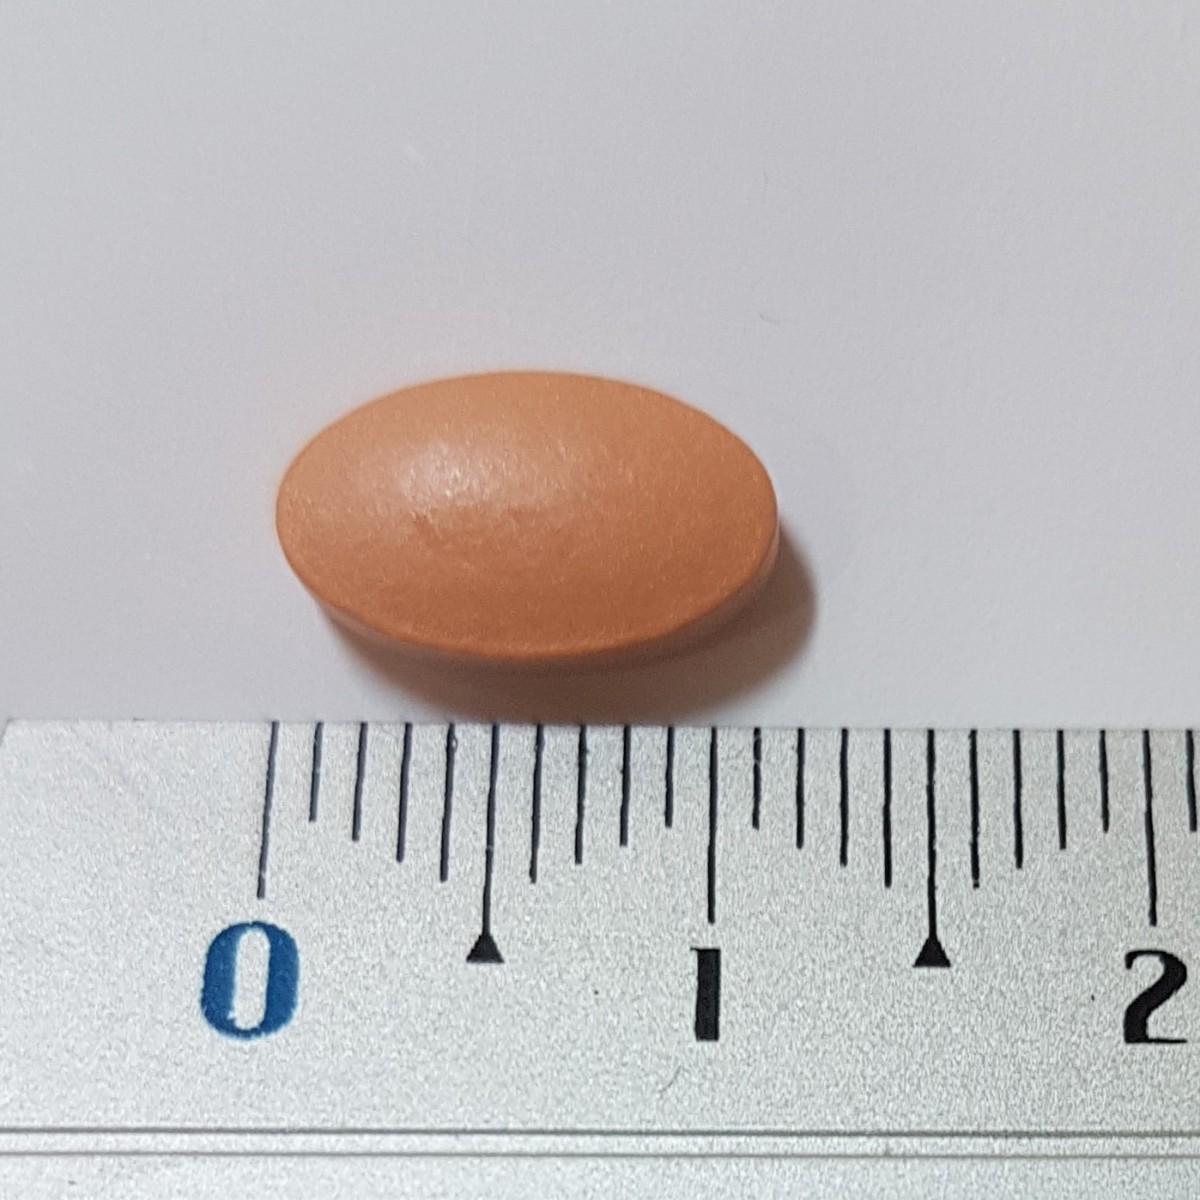 SIMVASTATINA VEGAL 20 mg COMPRIMIDOS EFG, 28 comprimidos fotografía de la forma farmacéutica.